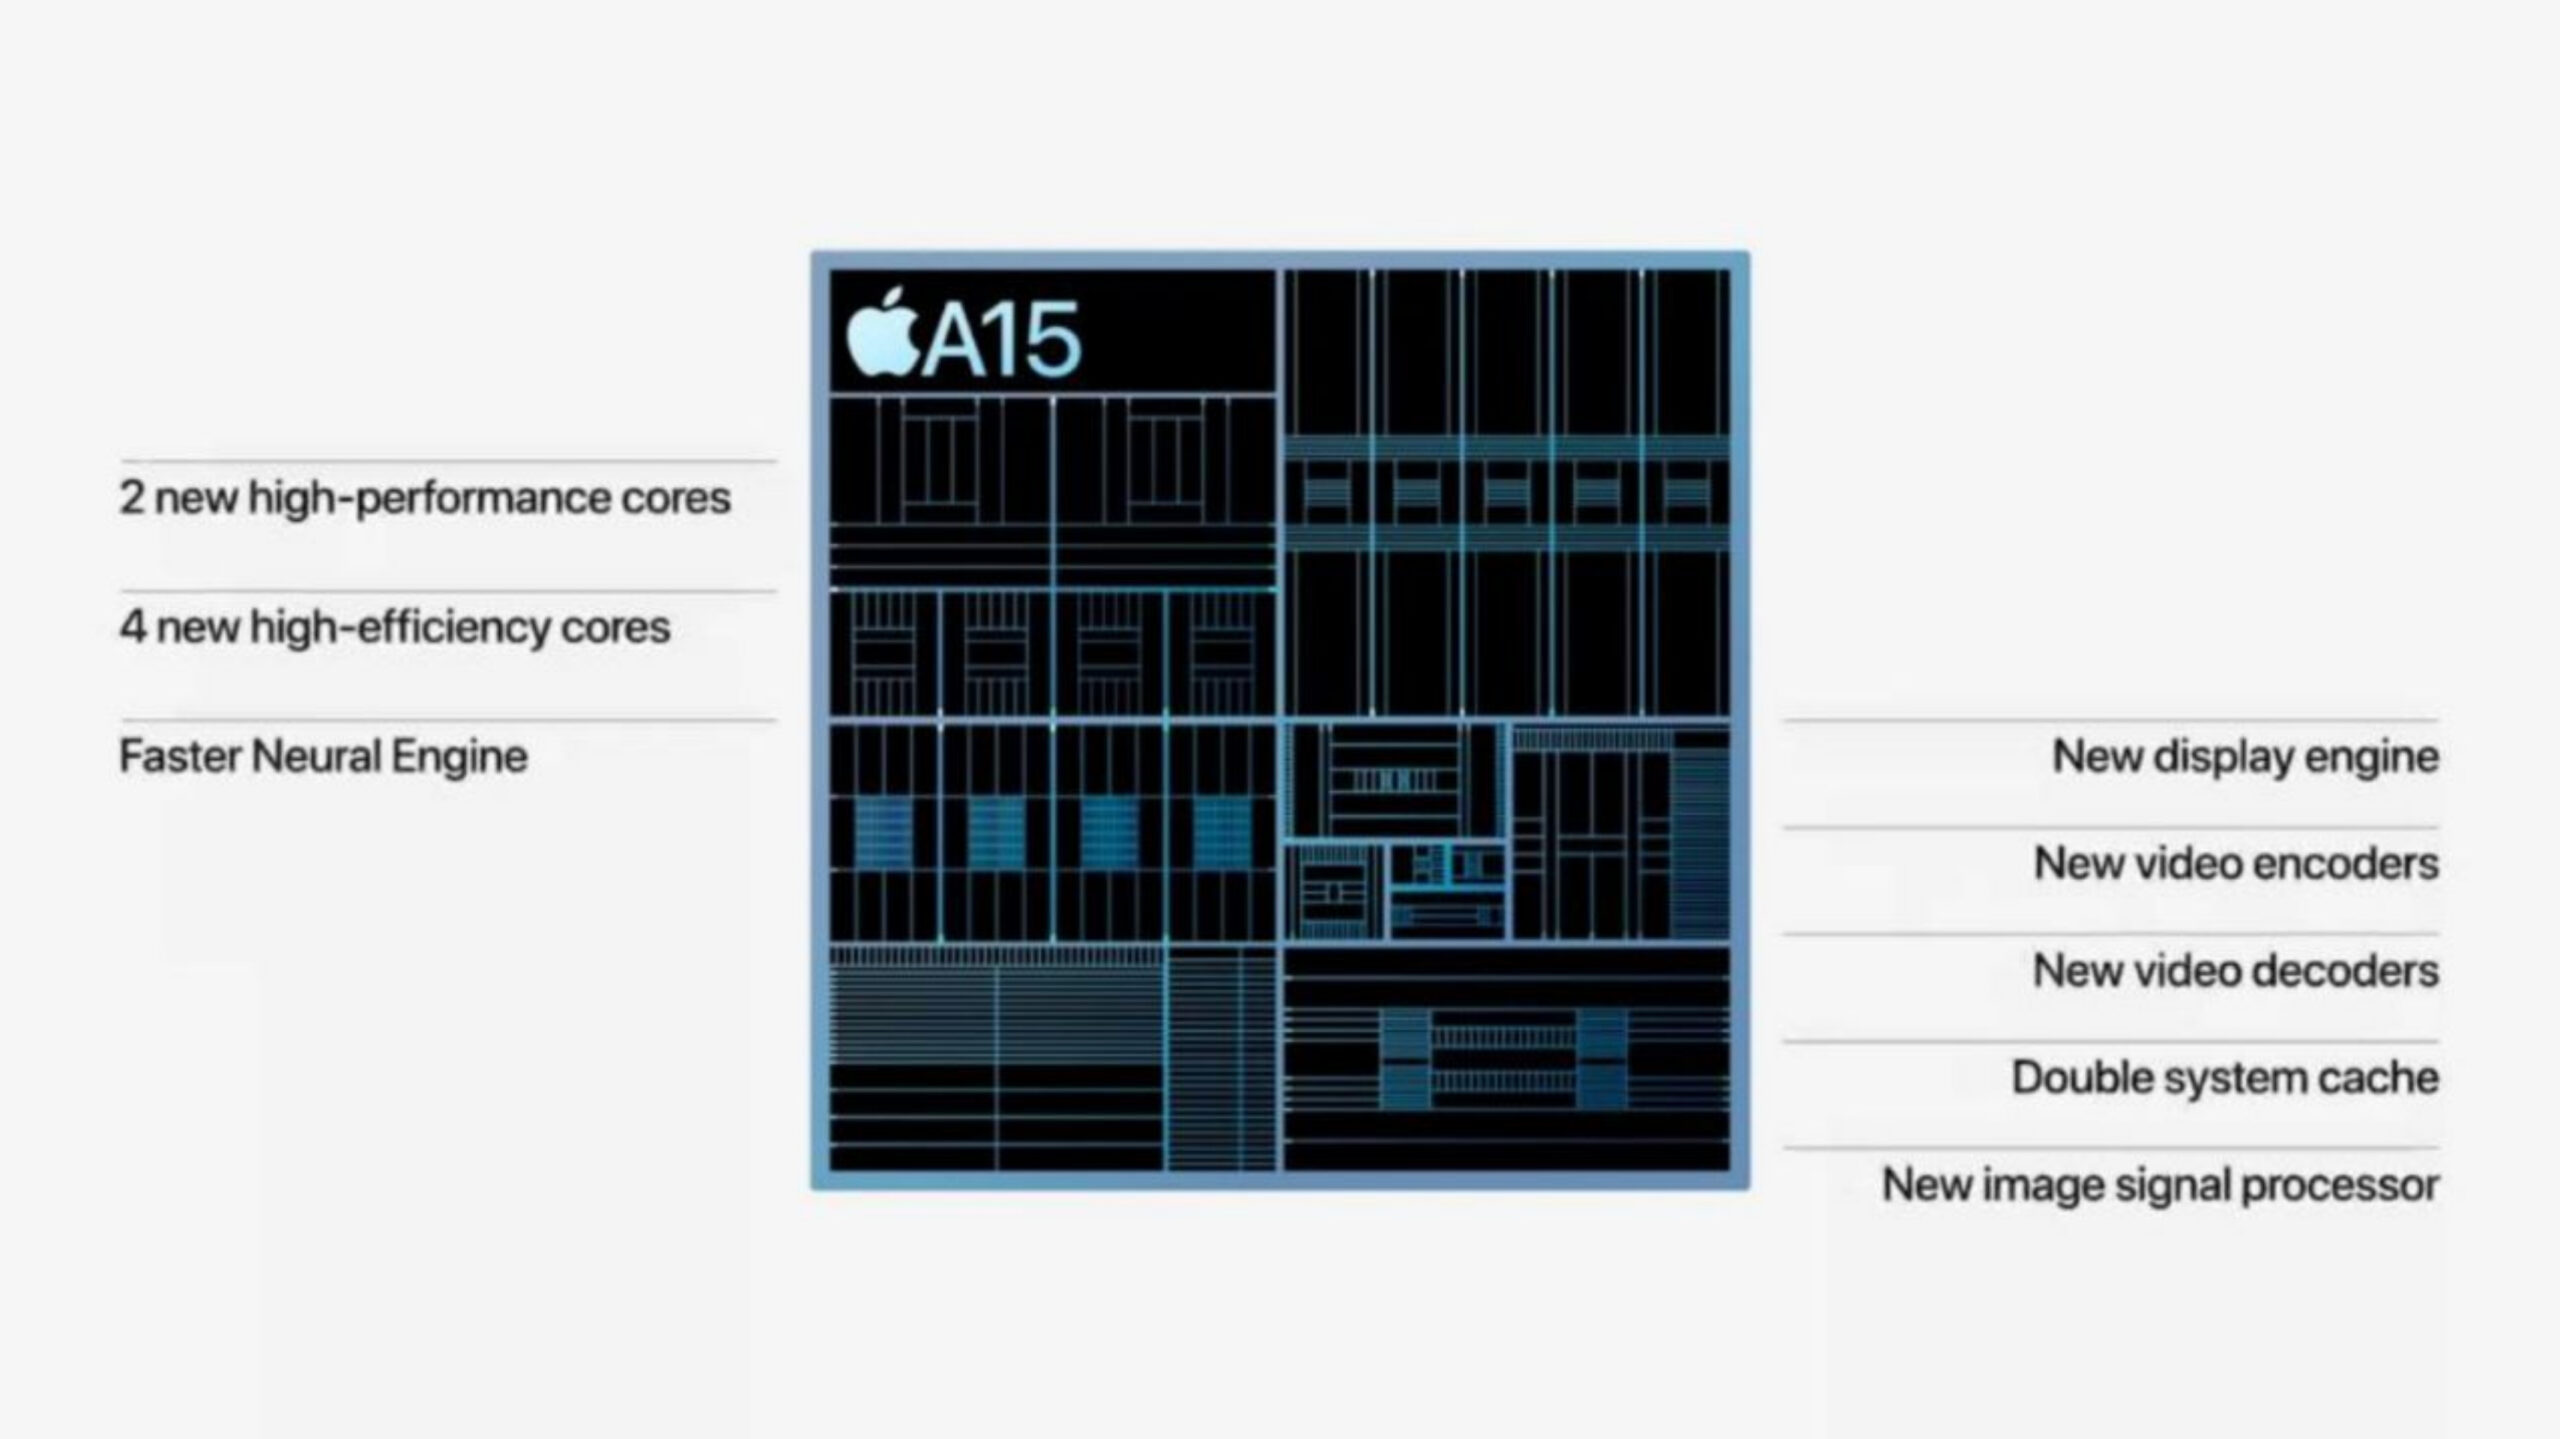 تراشه اپل A15 آیفون ۱۳ پرو با GPU قوی تر از همان تراشه در آیفون ۱۳ ارائه می شود